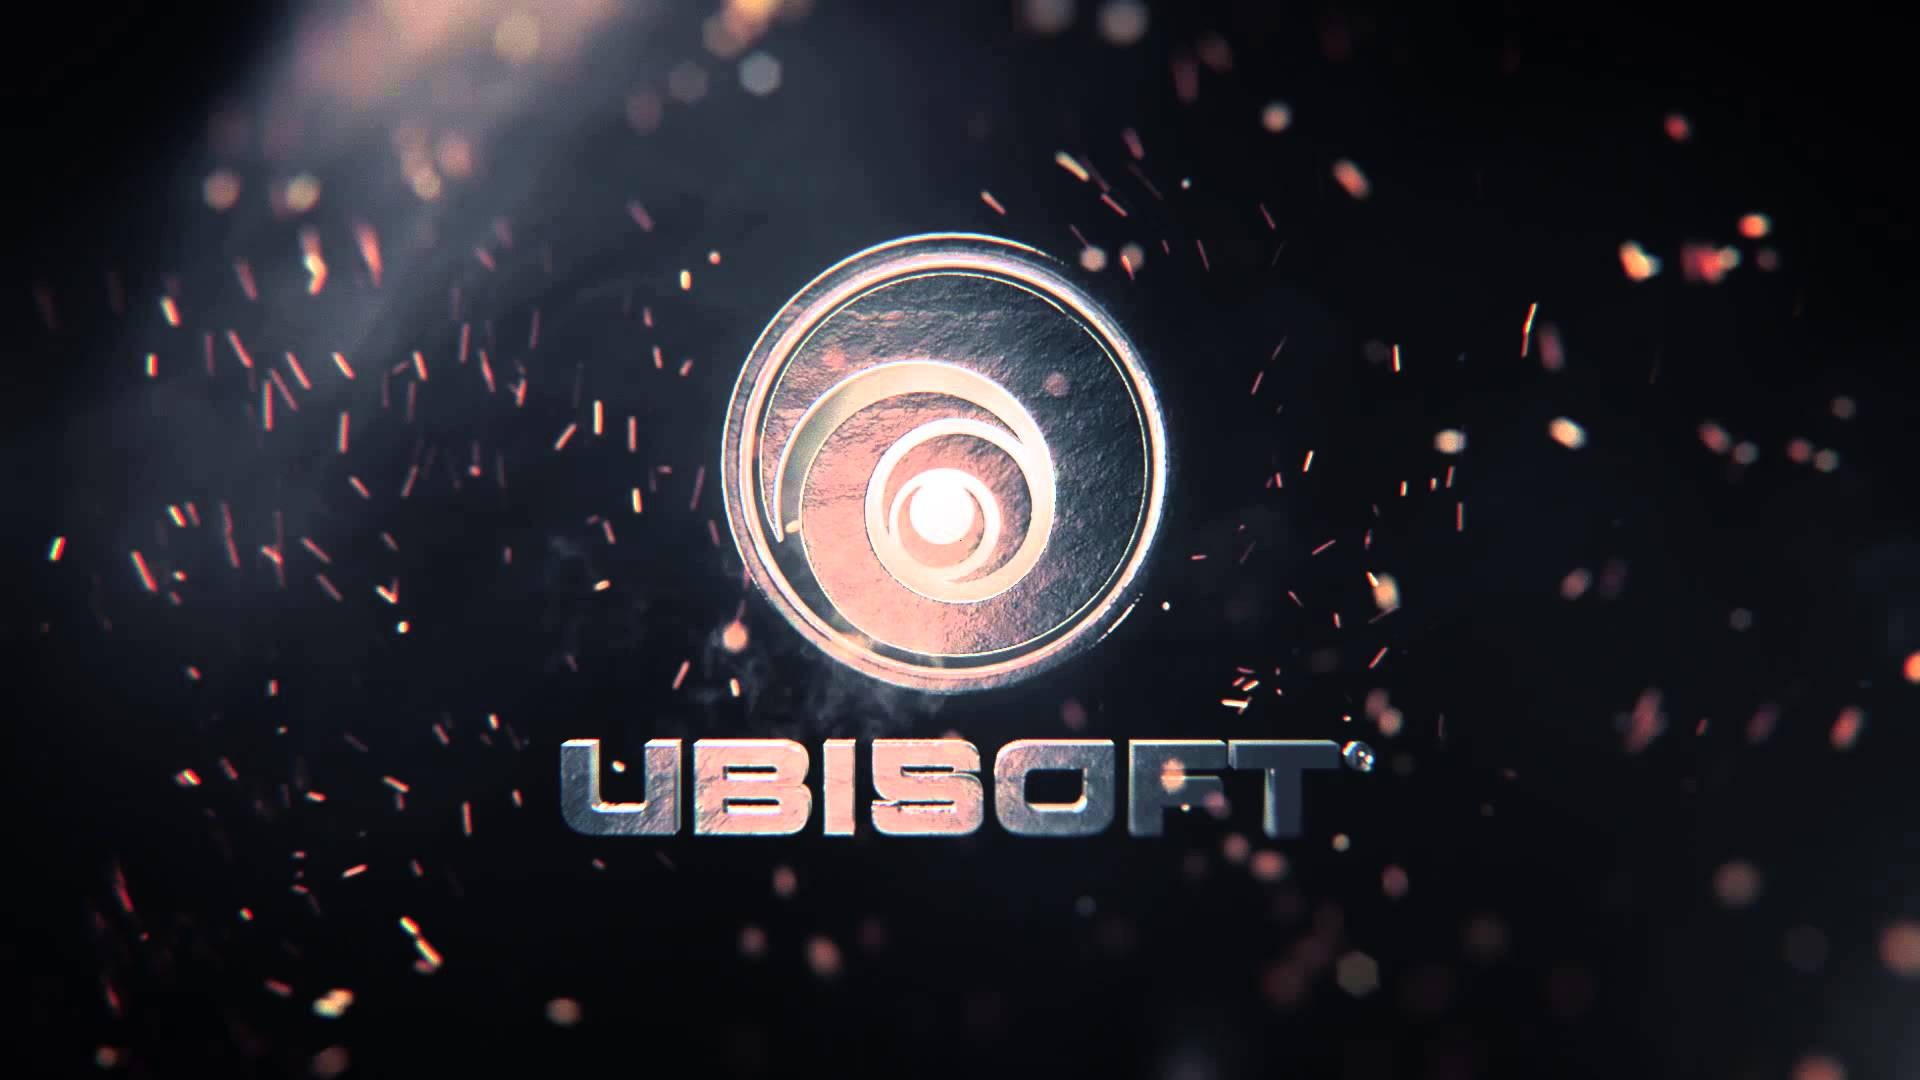 Ubisoft muốn giữ bản sắc trước tập đoàn Vivendi Investment